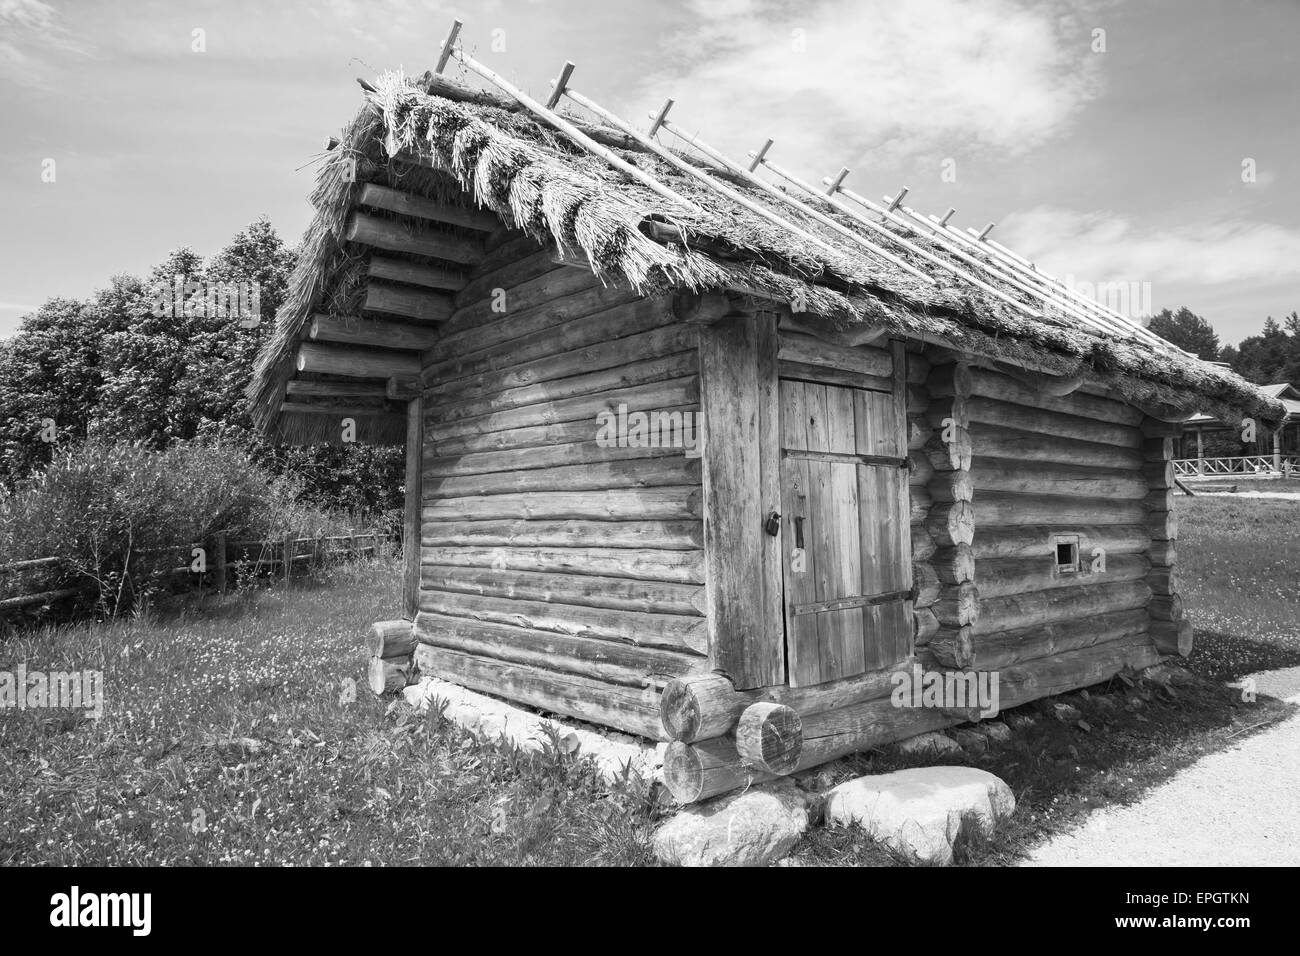 Ländliche Holzbaukunst z. B. kleinen russischen Banja typische Gebäude, schwarz / weiß Foto Stockfoto